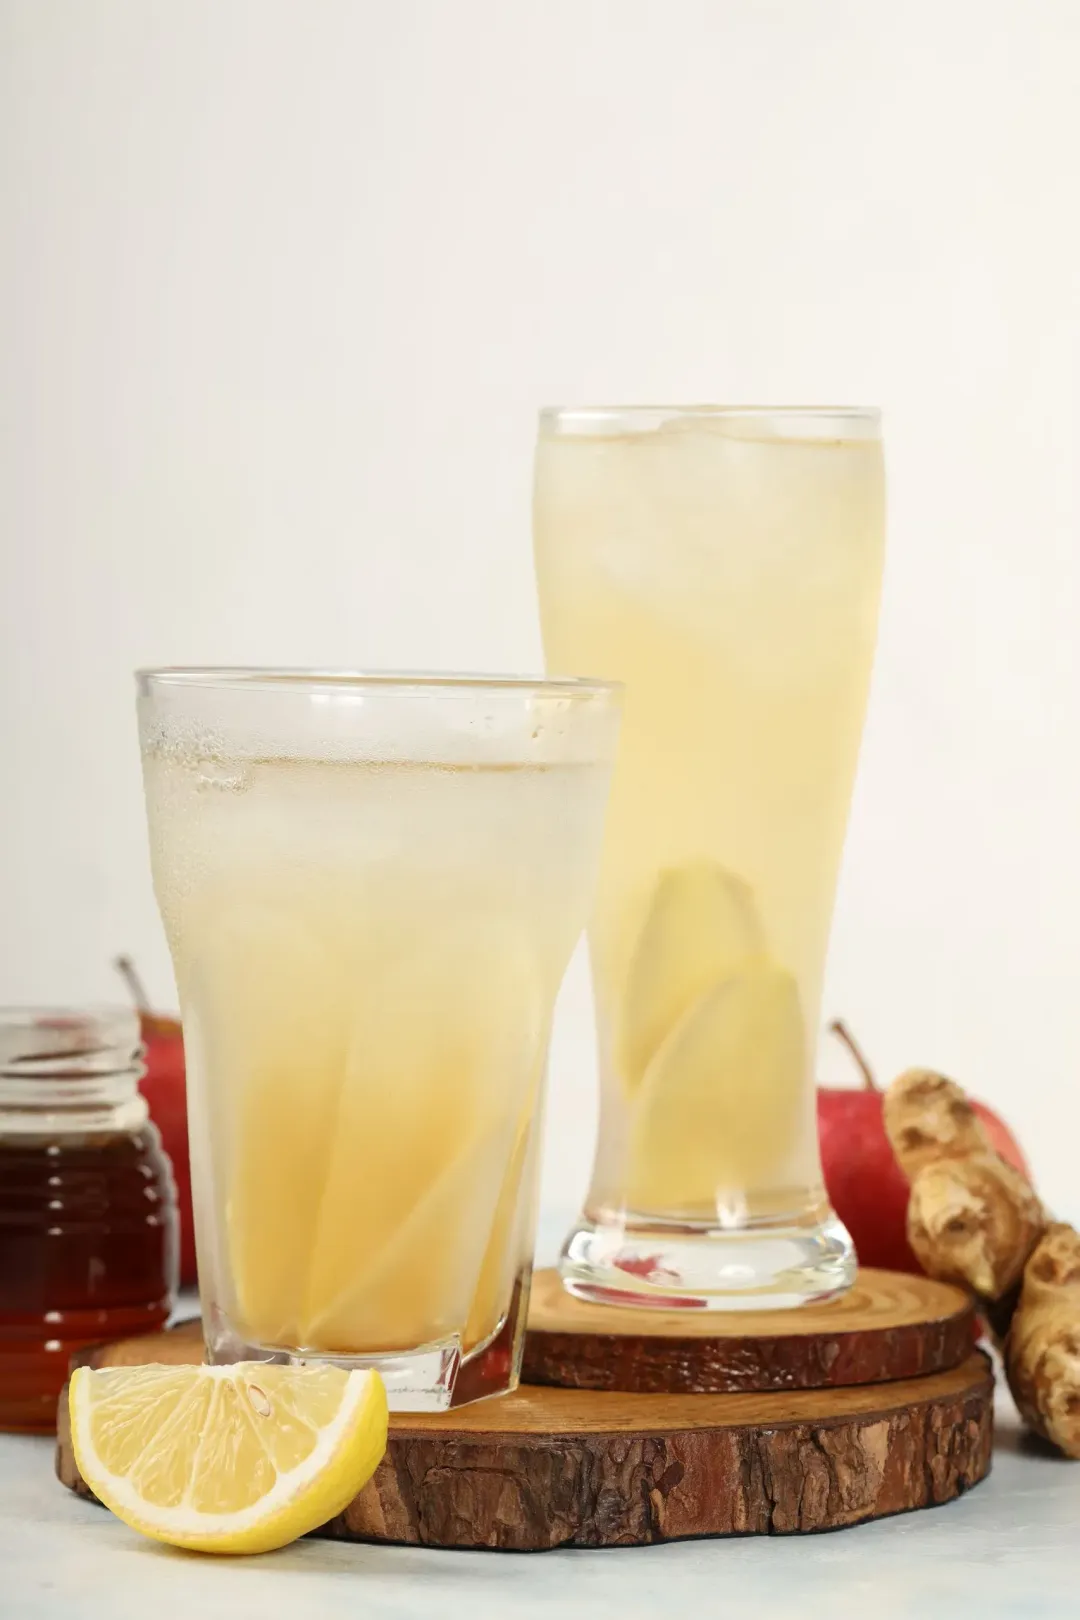 Apple Cider Vinegar Drink recipe scaled